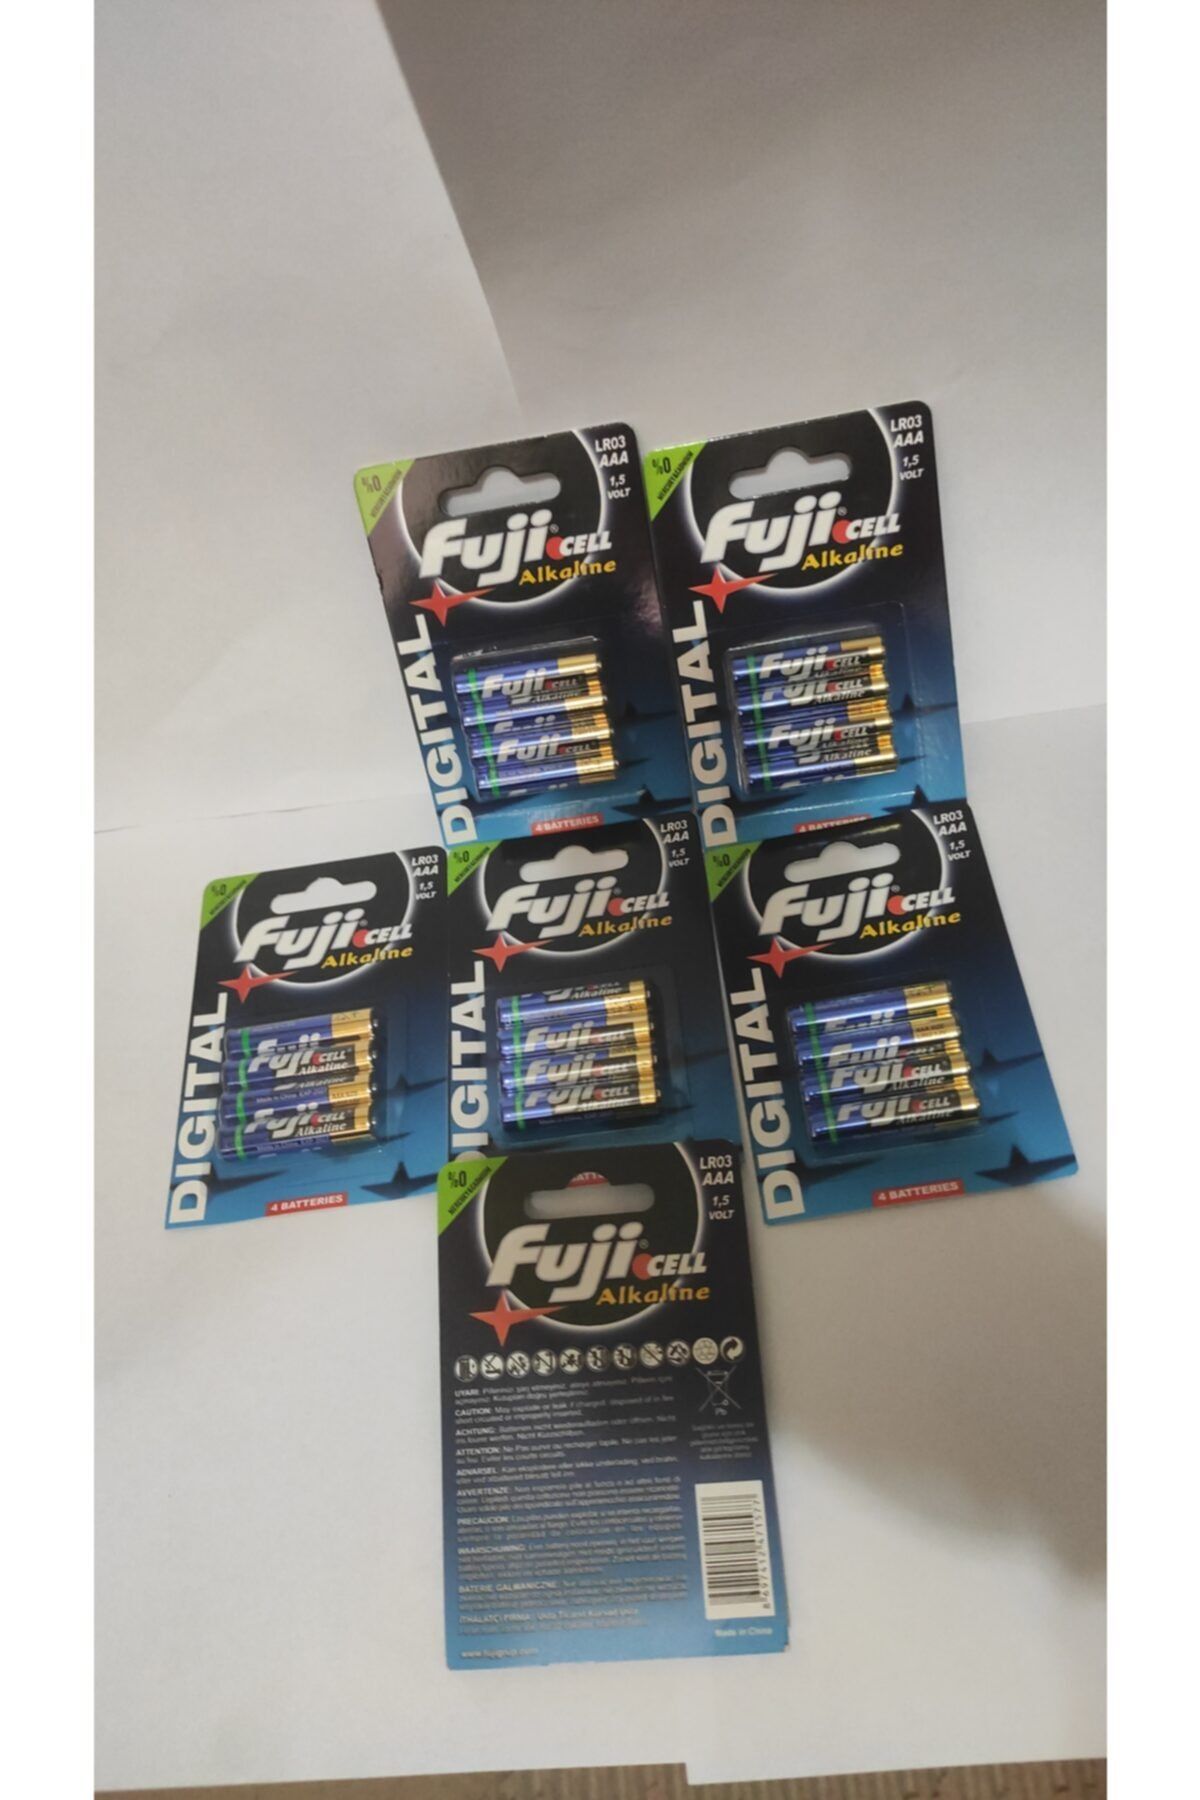 Fujika Fujicell 6x4=24 Ad Alkalin Ince Kumanda Pili Lr03 Aaa 1,5 Volt